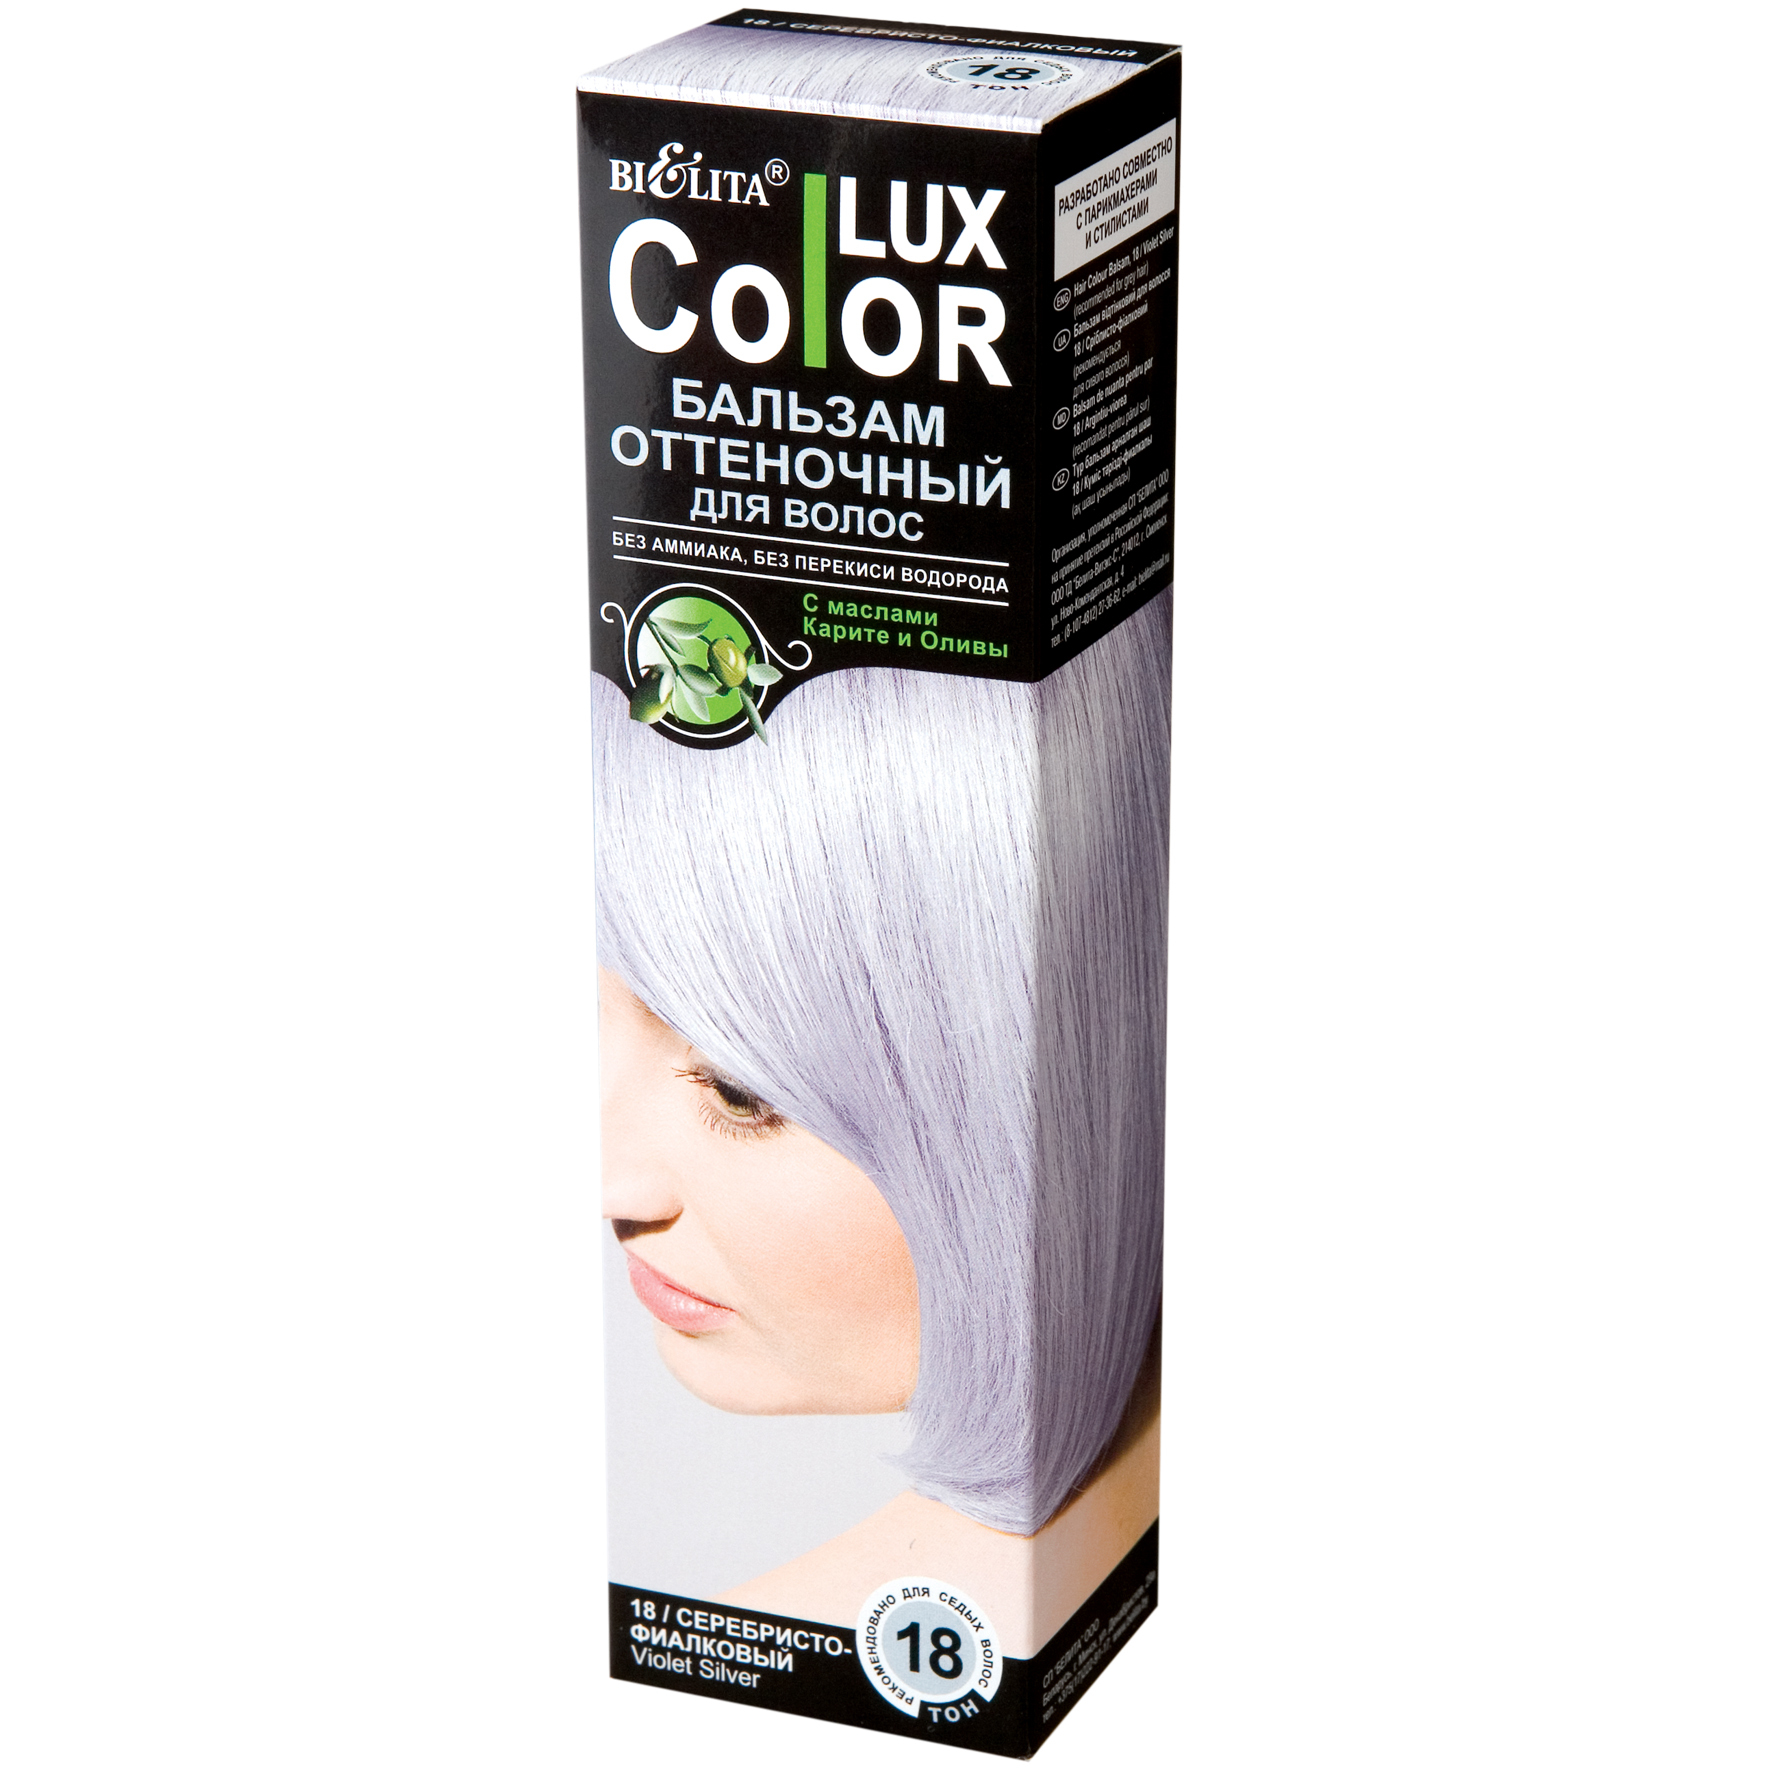 Оттеночный бальзам люкс. Lux Color бальзам оттеночный Color Lux 18. Белита колор Люкс оттеночный бальзам. Оттеночный бальзам для волос "Color Lux" тон: 19 серебристый 100 мл. Bielita Color Lux бальзам оттеночный.